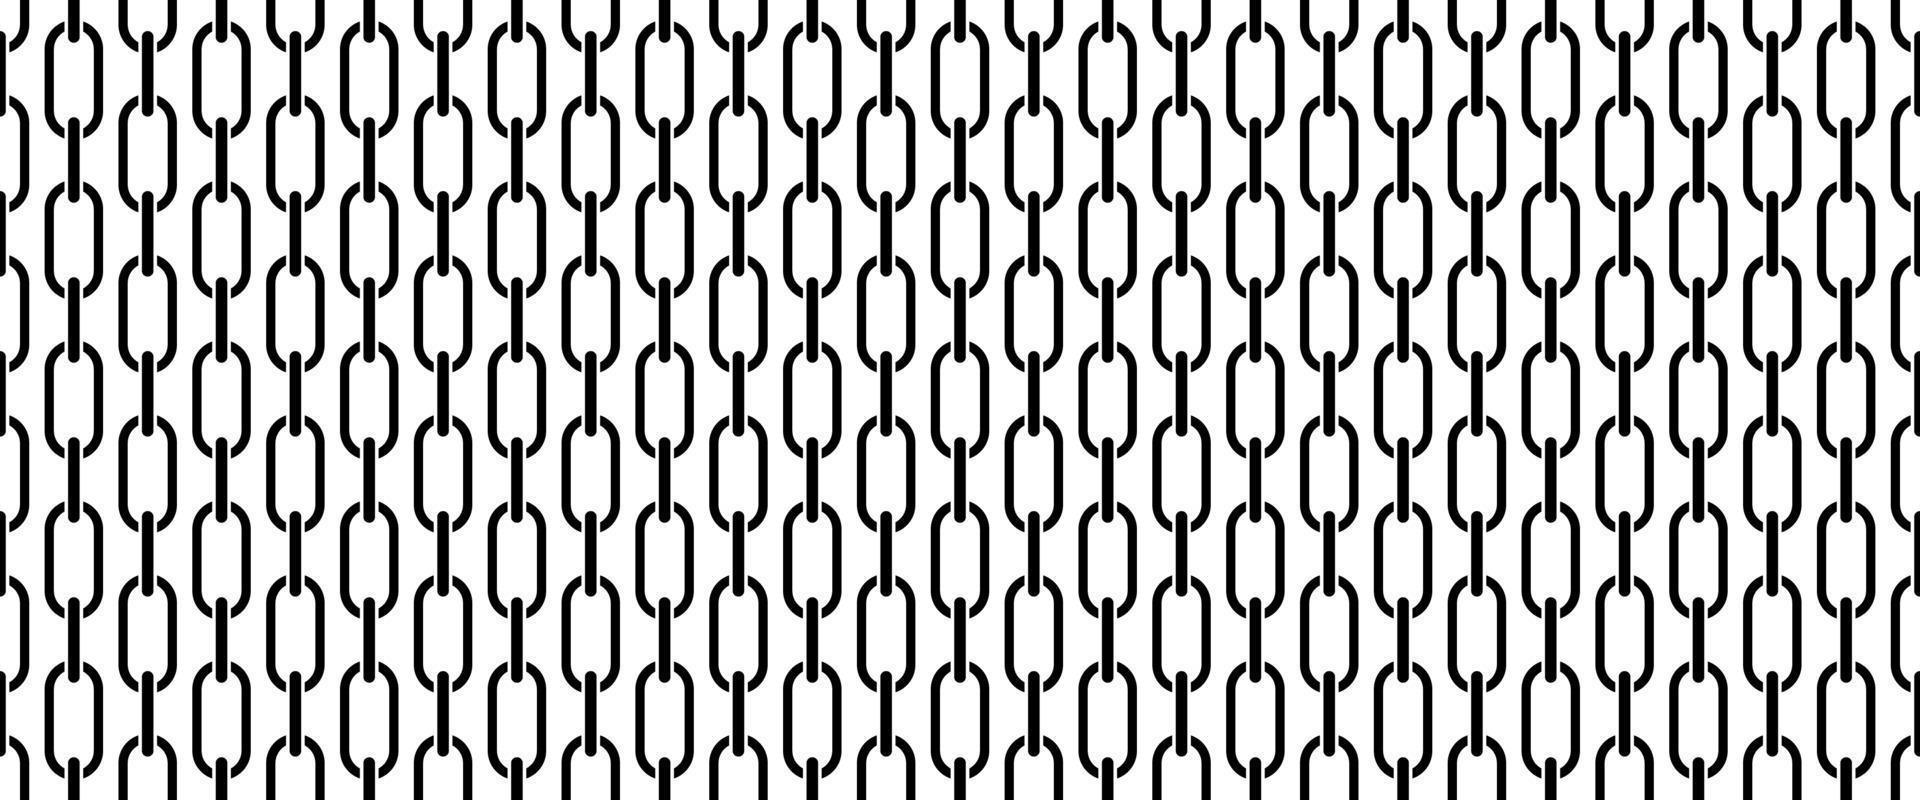 nero bianca catena collegamento senza soluzione di continuità pattern.chainlink senza soluzione di continuità modello vettore